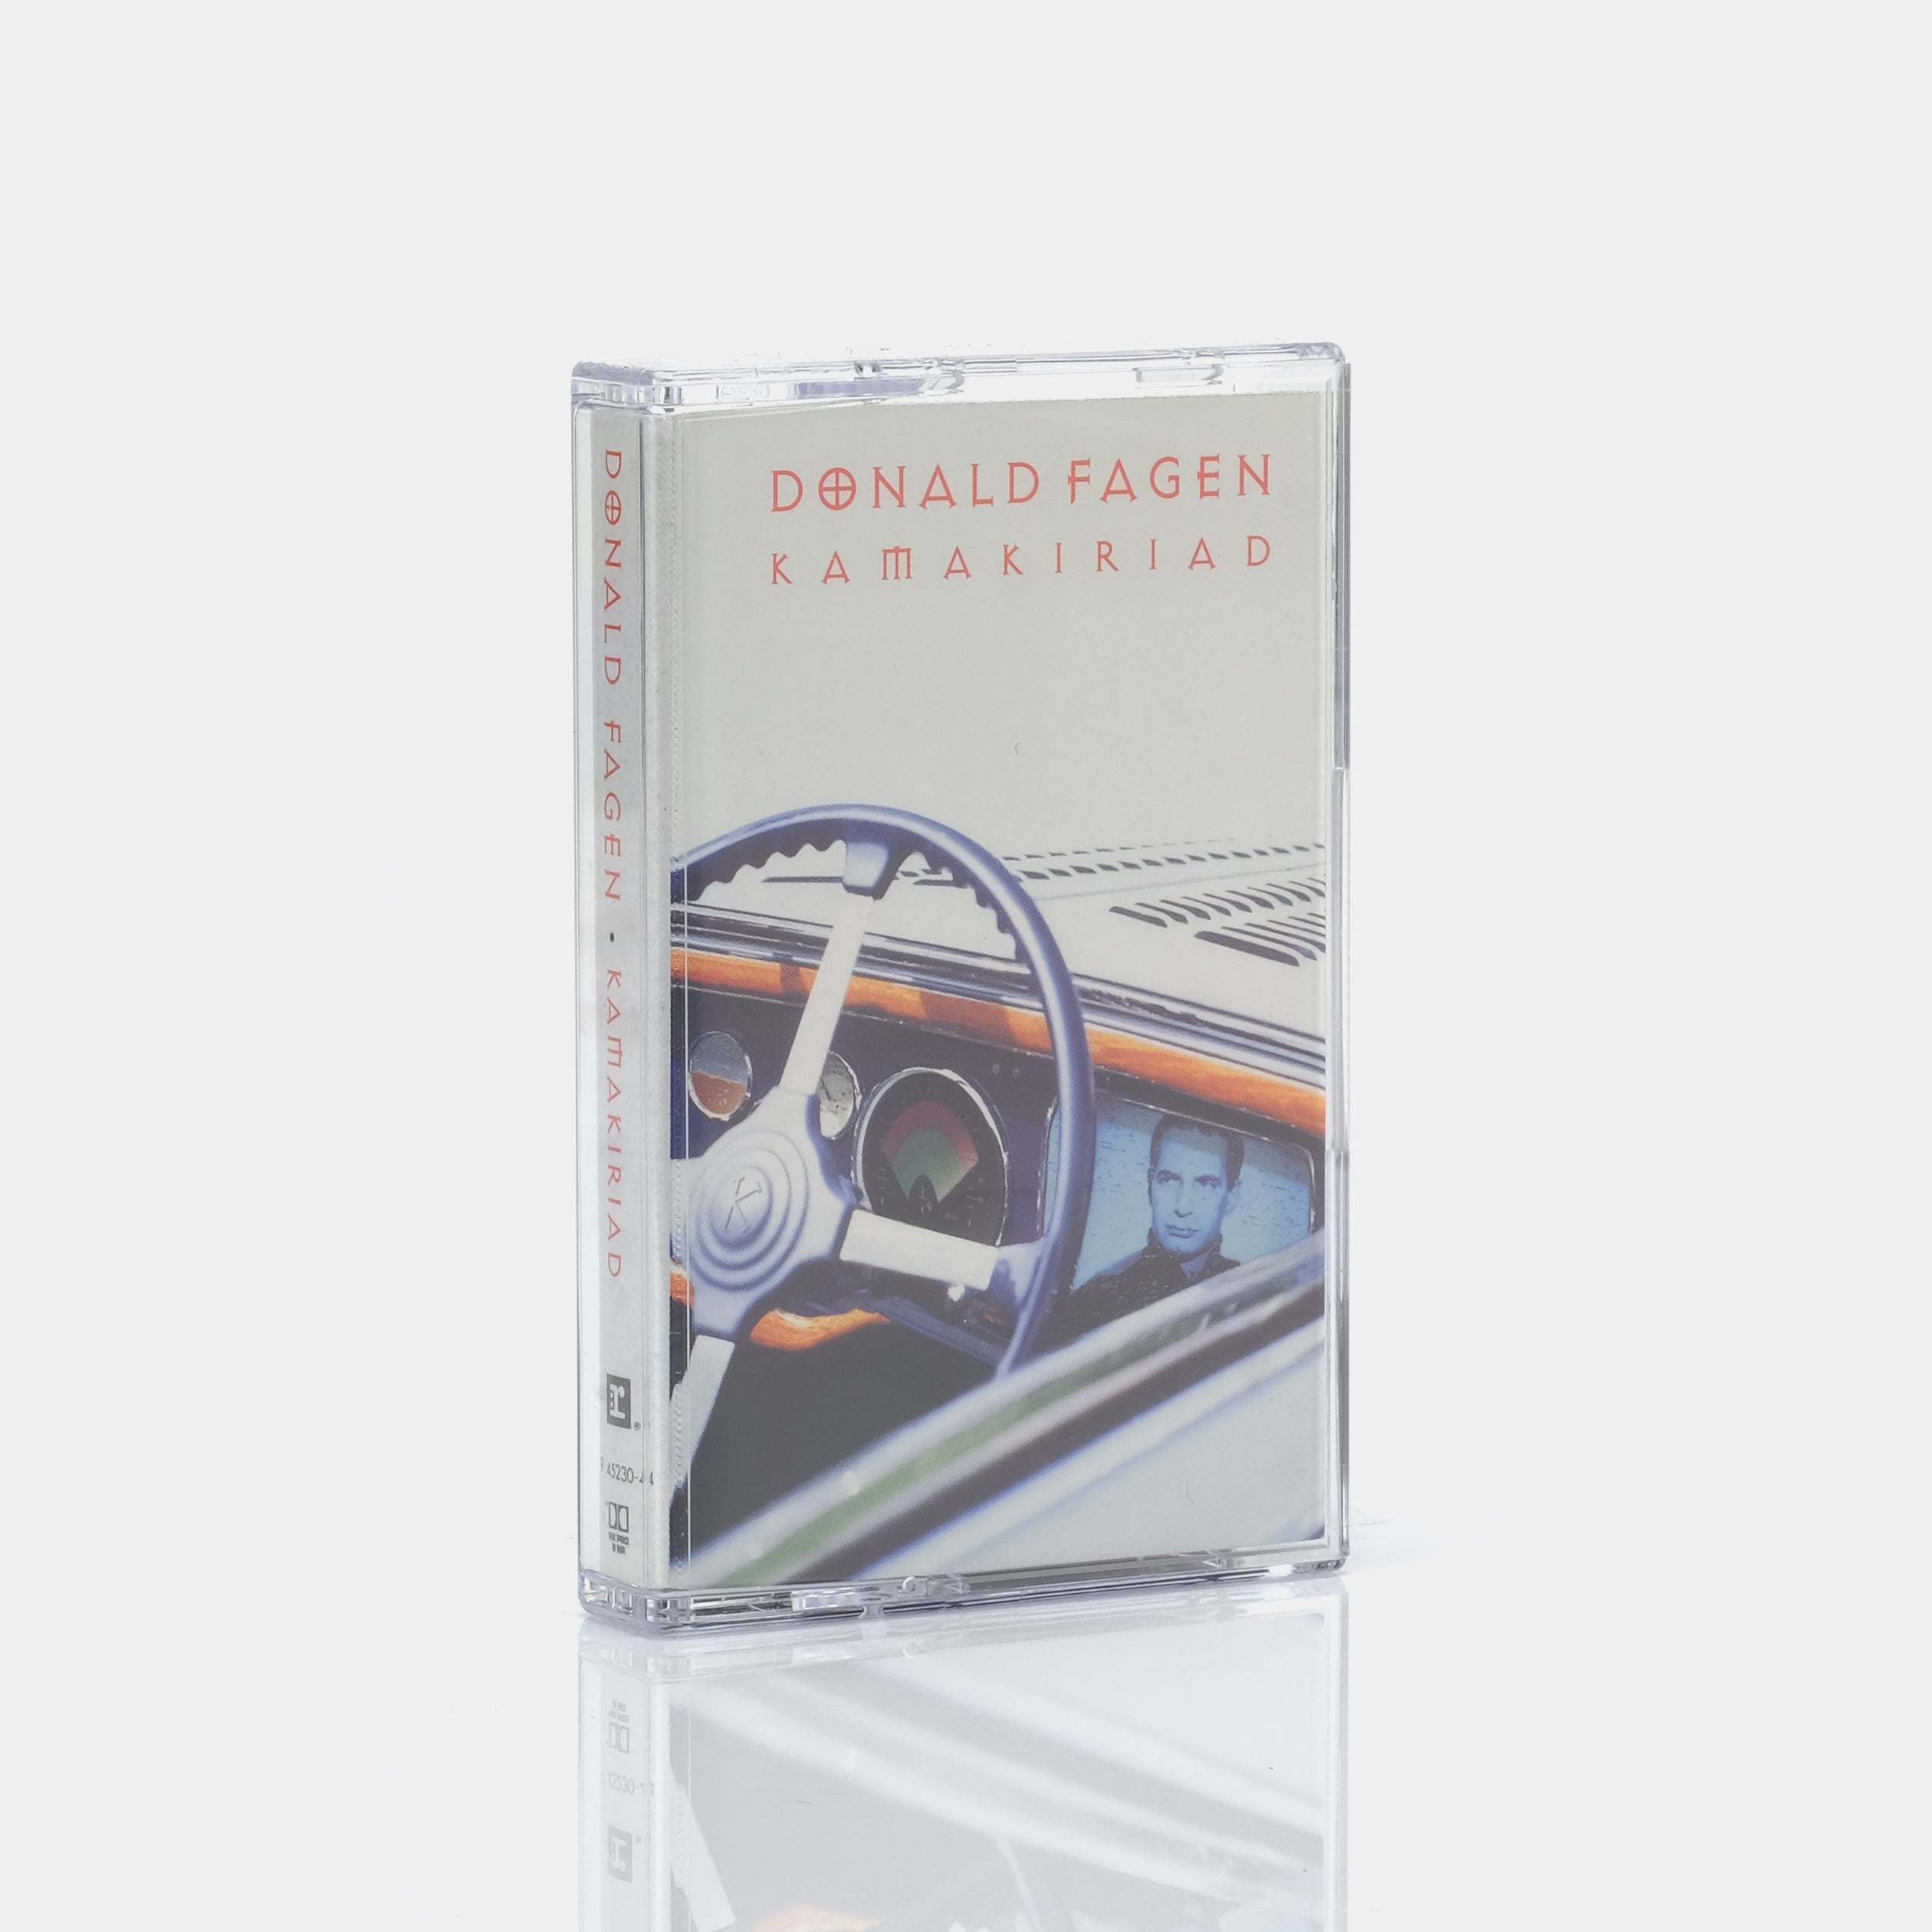 Donald Fagen - Kamakiriad Cassette Tape